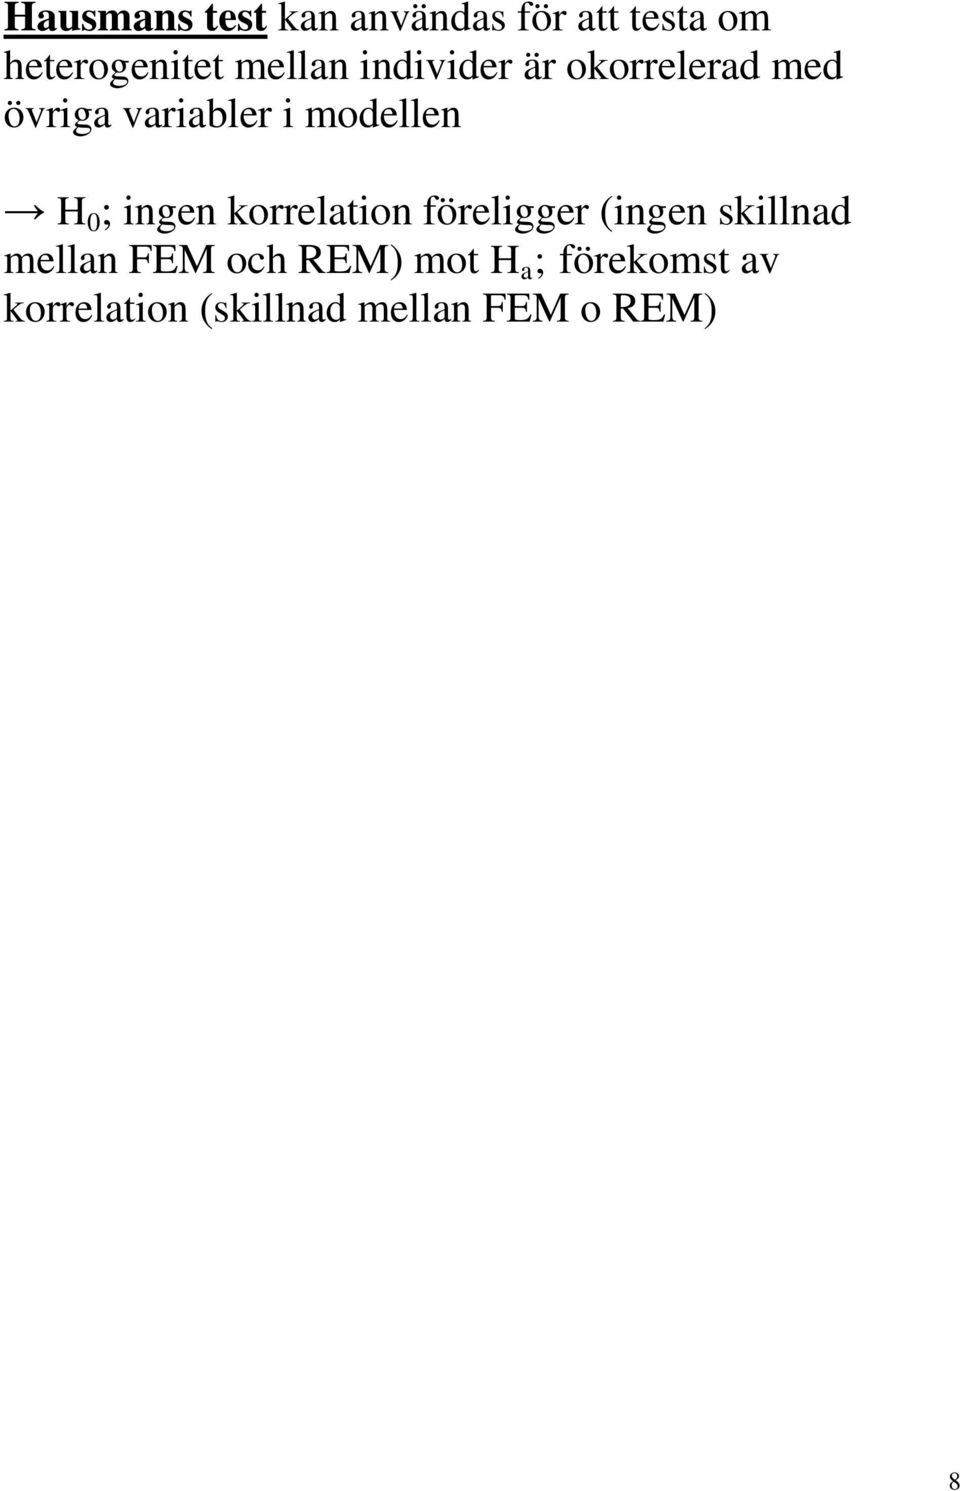 ingen korrelation föreligger (ingen skillnad mellan FEM och REM)